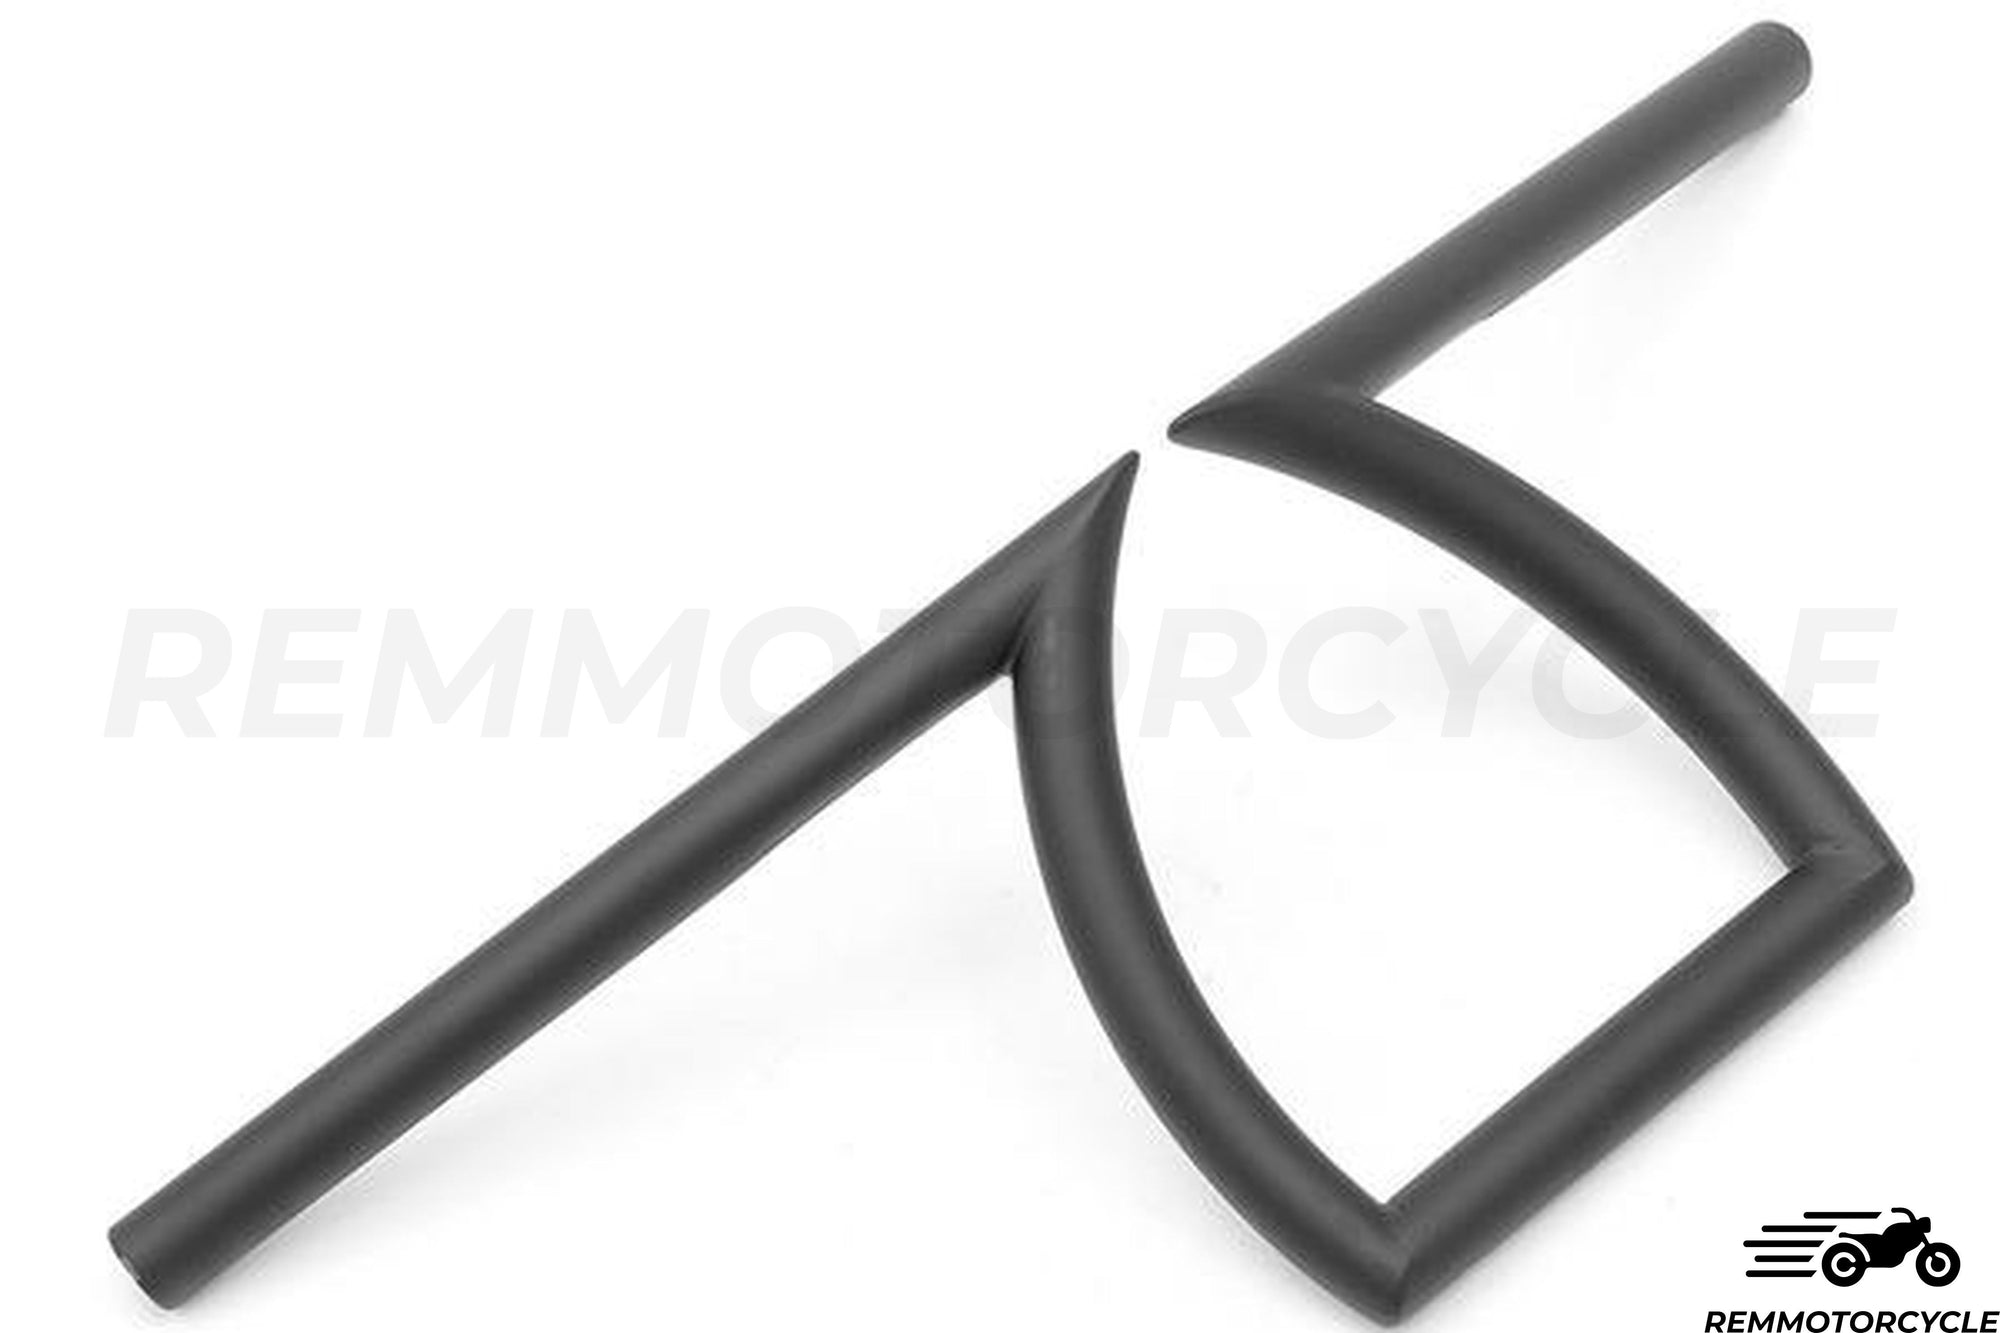 Handlebar 0.98 in (25 mm) Pullback Z-Bar Chrome or Black